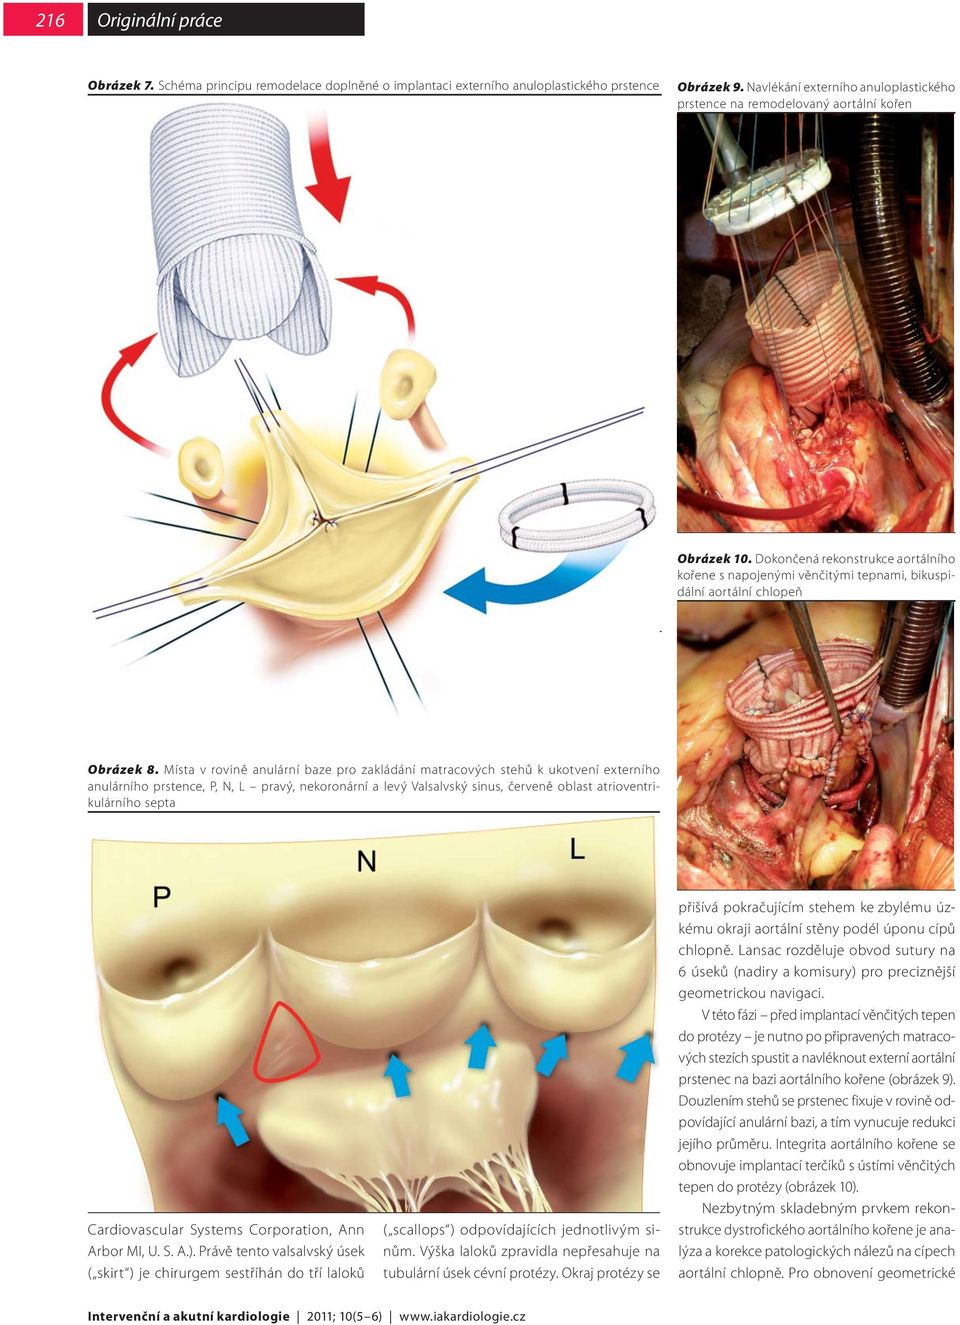 Dokončená rekonstrukce aortálního kořene s napojenými věnčitými tepnami, bikuspidální aortální chlopeň Obrázek 8.